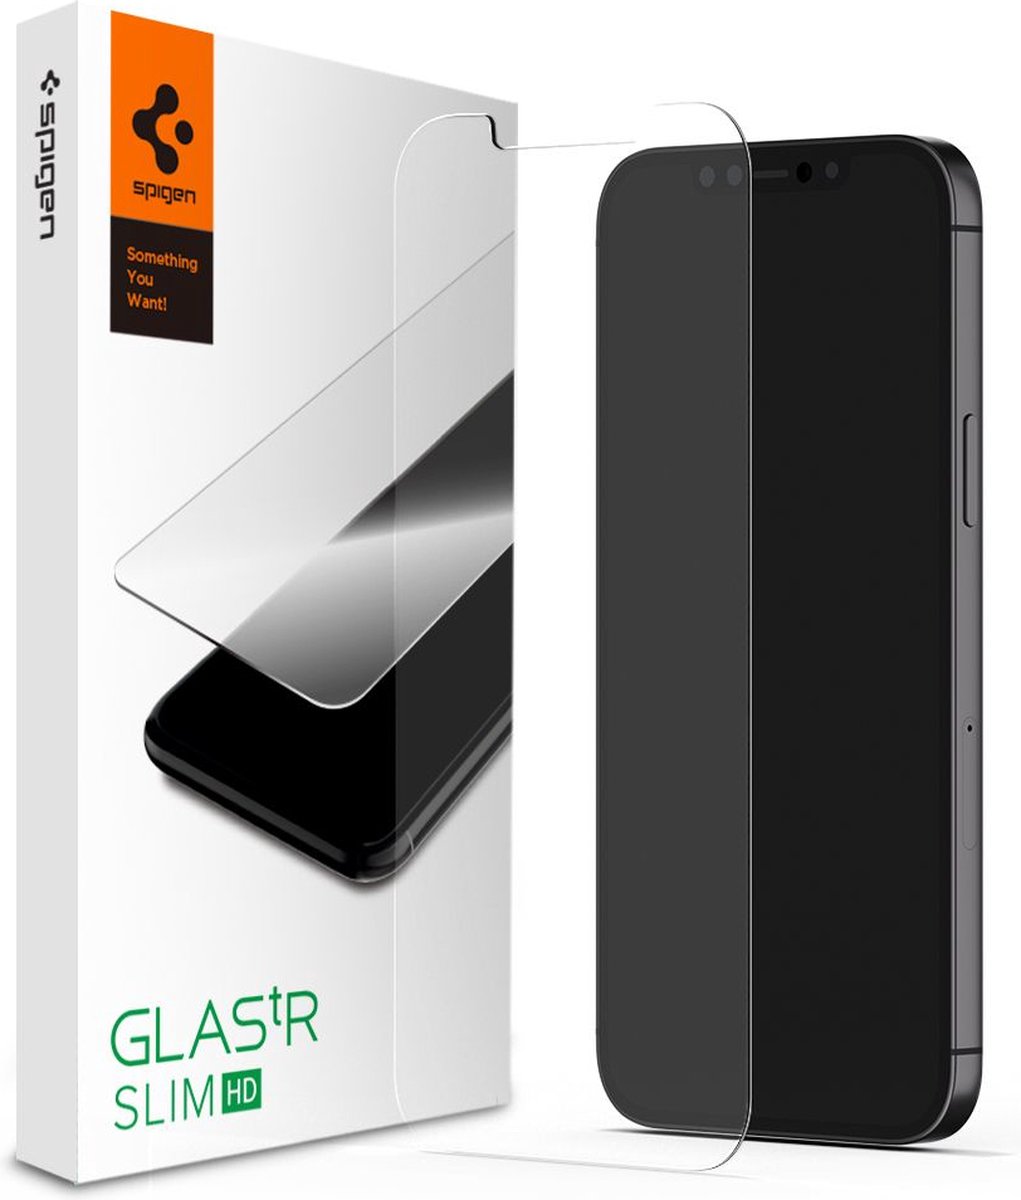 Spigen Glas tR Slim screenprotector geschikt voor iPhone 13 en iPhone 13 Pro - transparant - Spigen